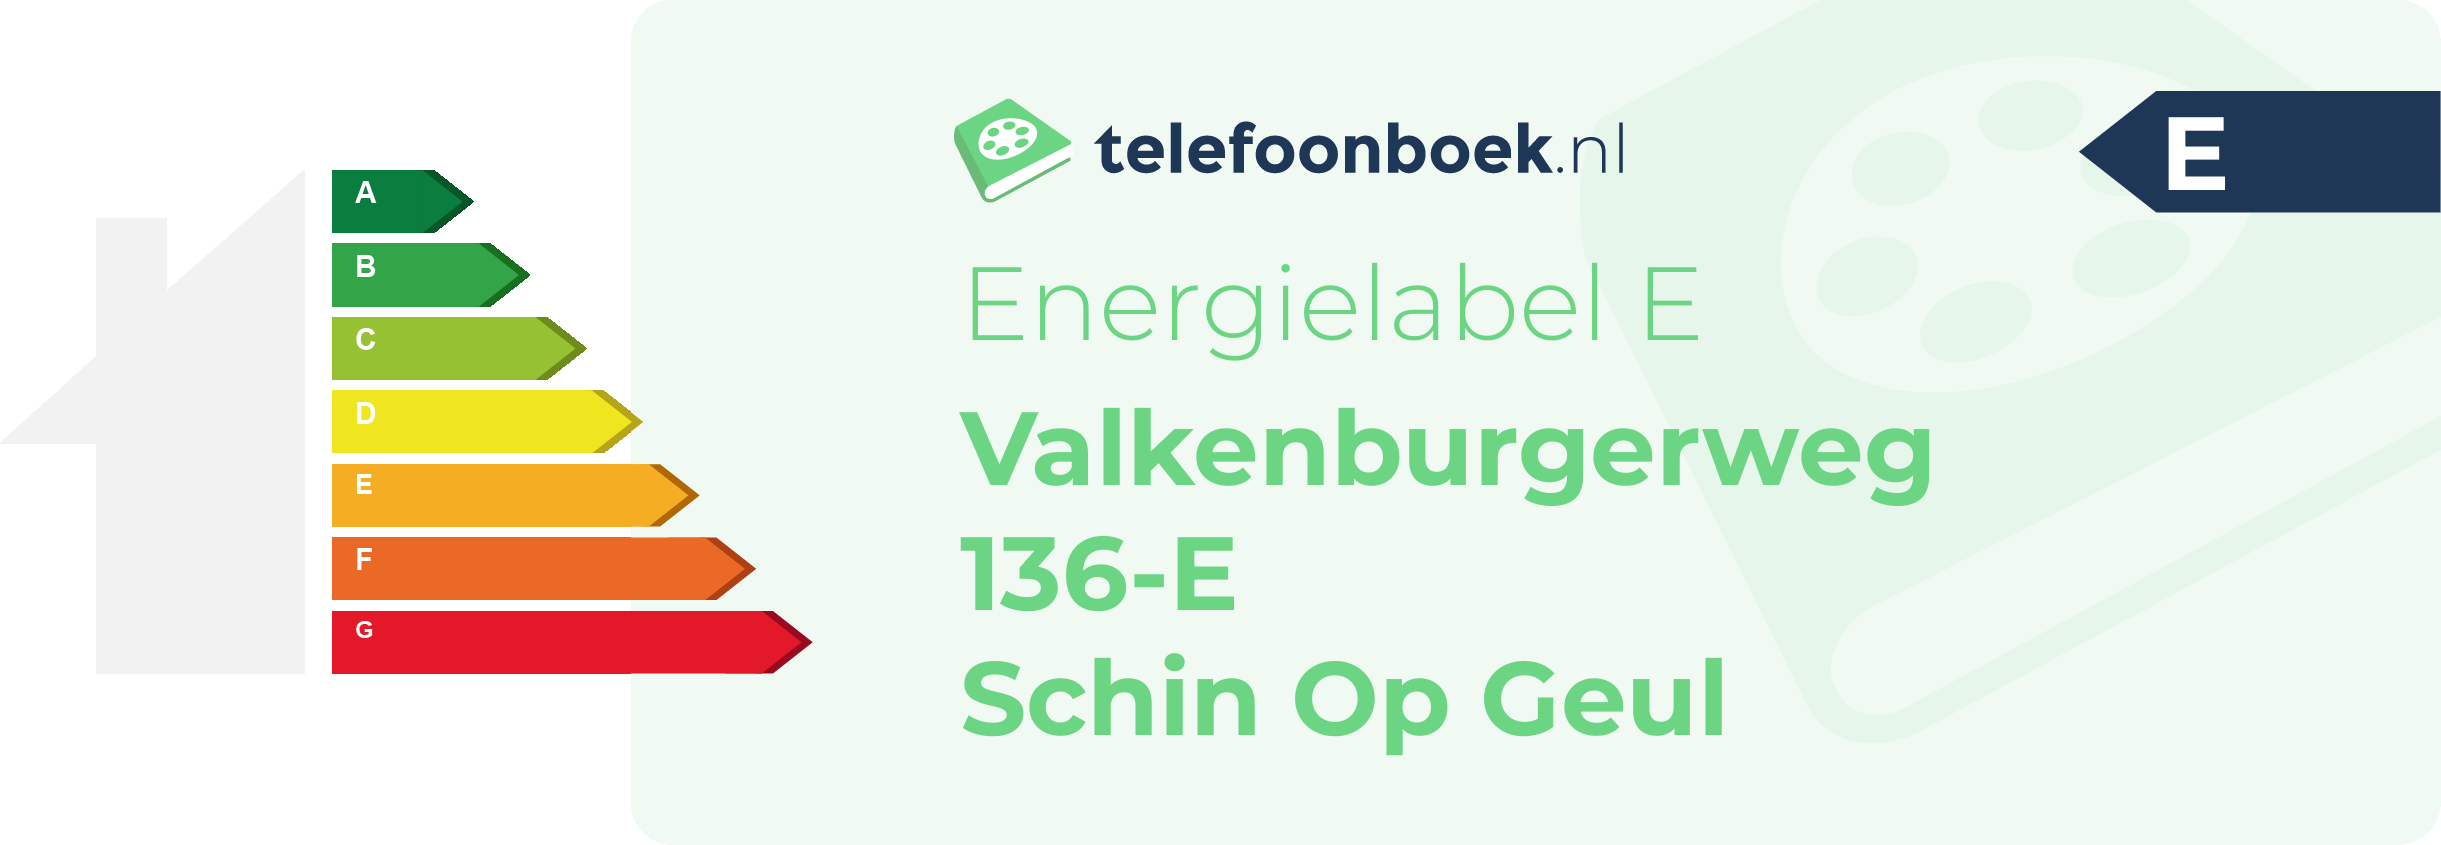 Energielabel Valkenburgerweg 136-E Schin Op Geul